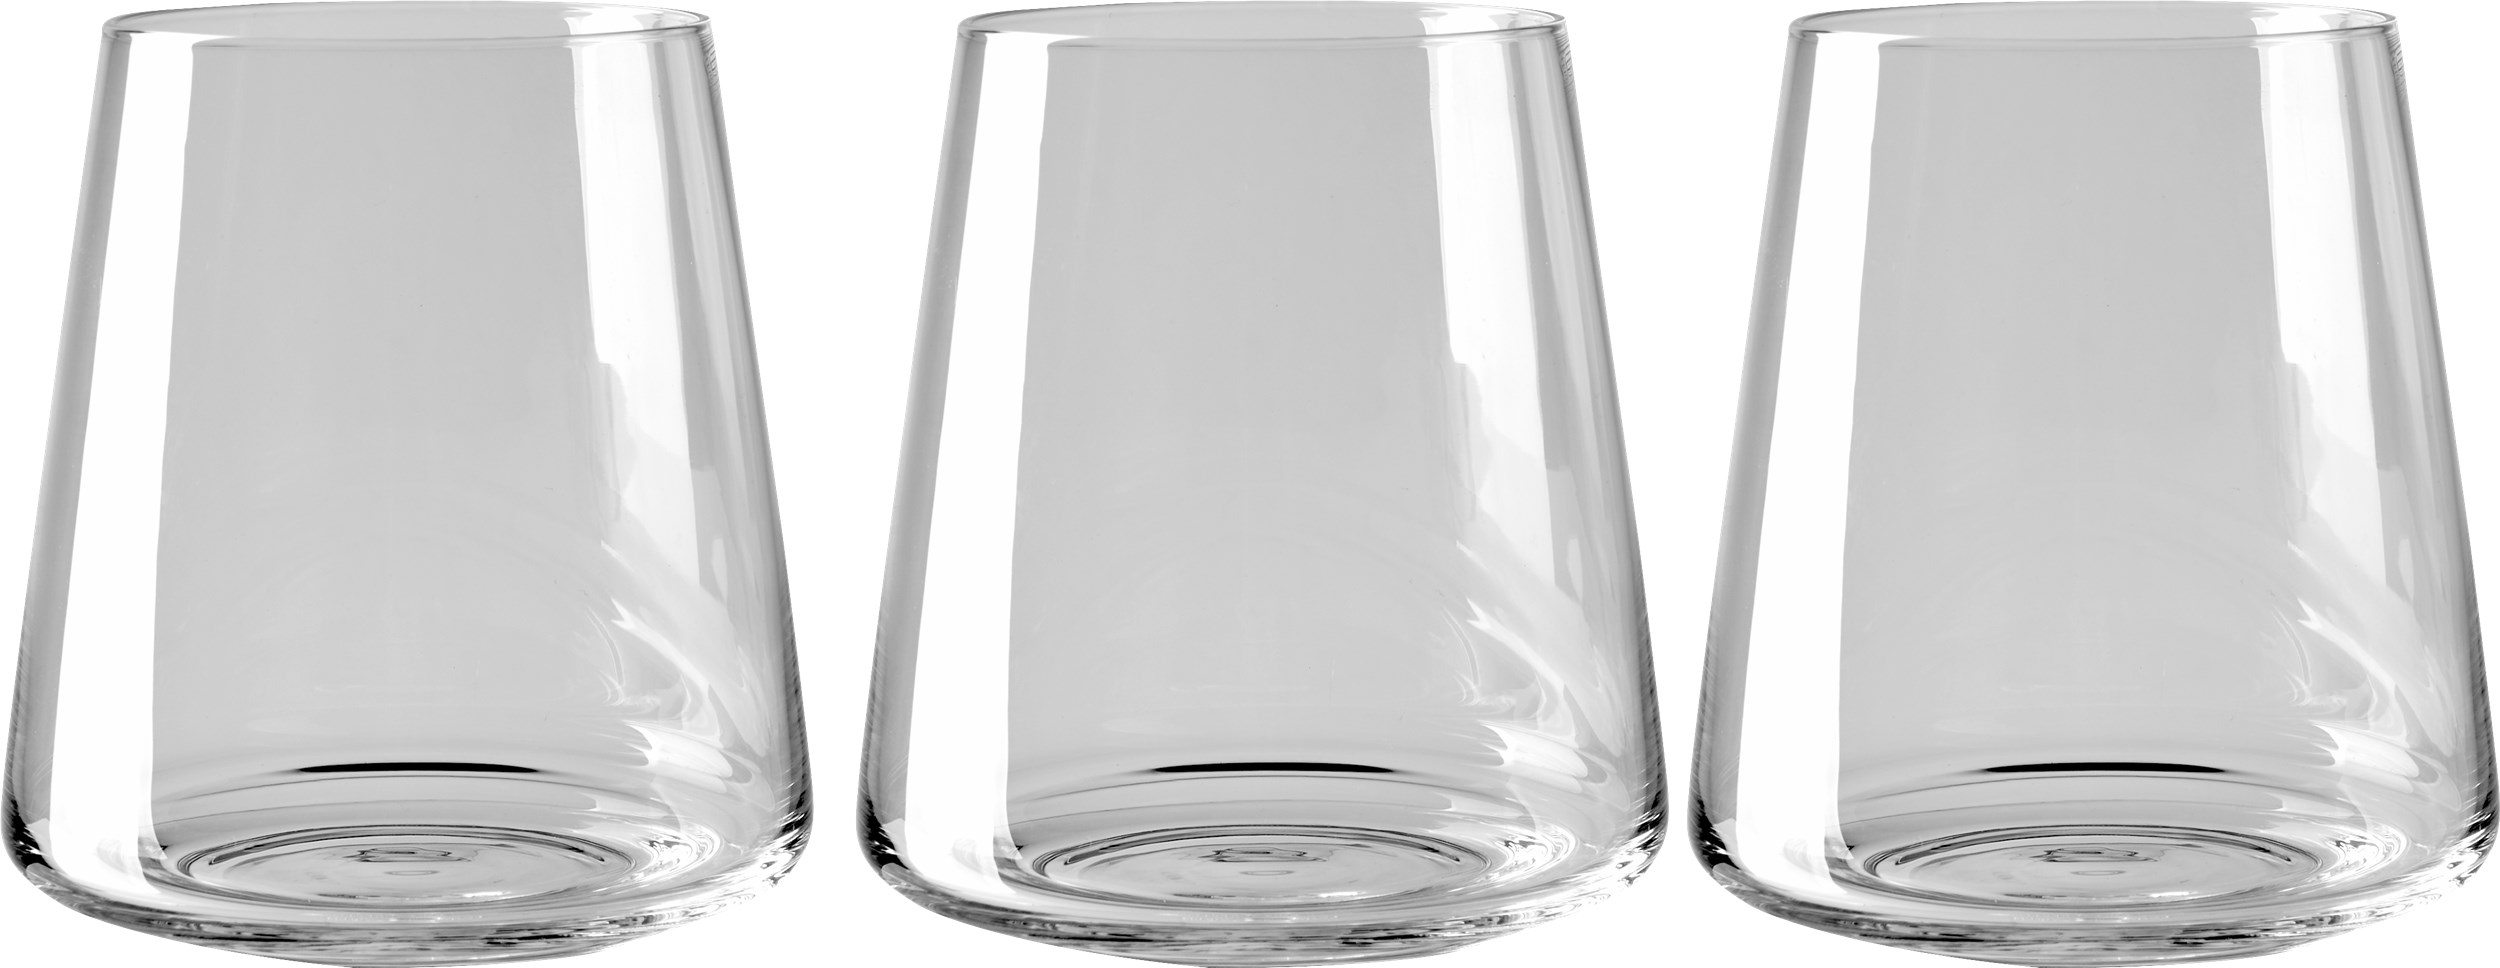 Liva Vandglas 3 stk i æske - Klar glas